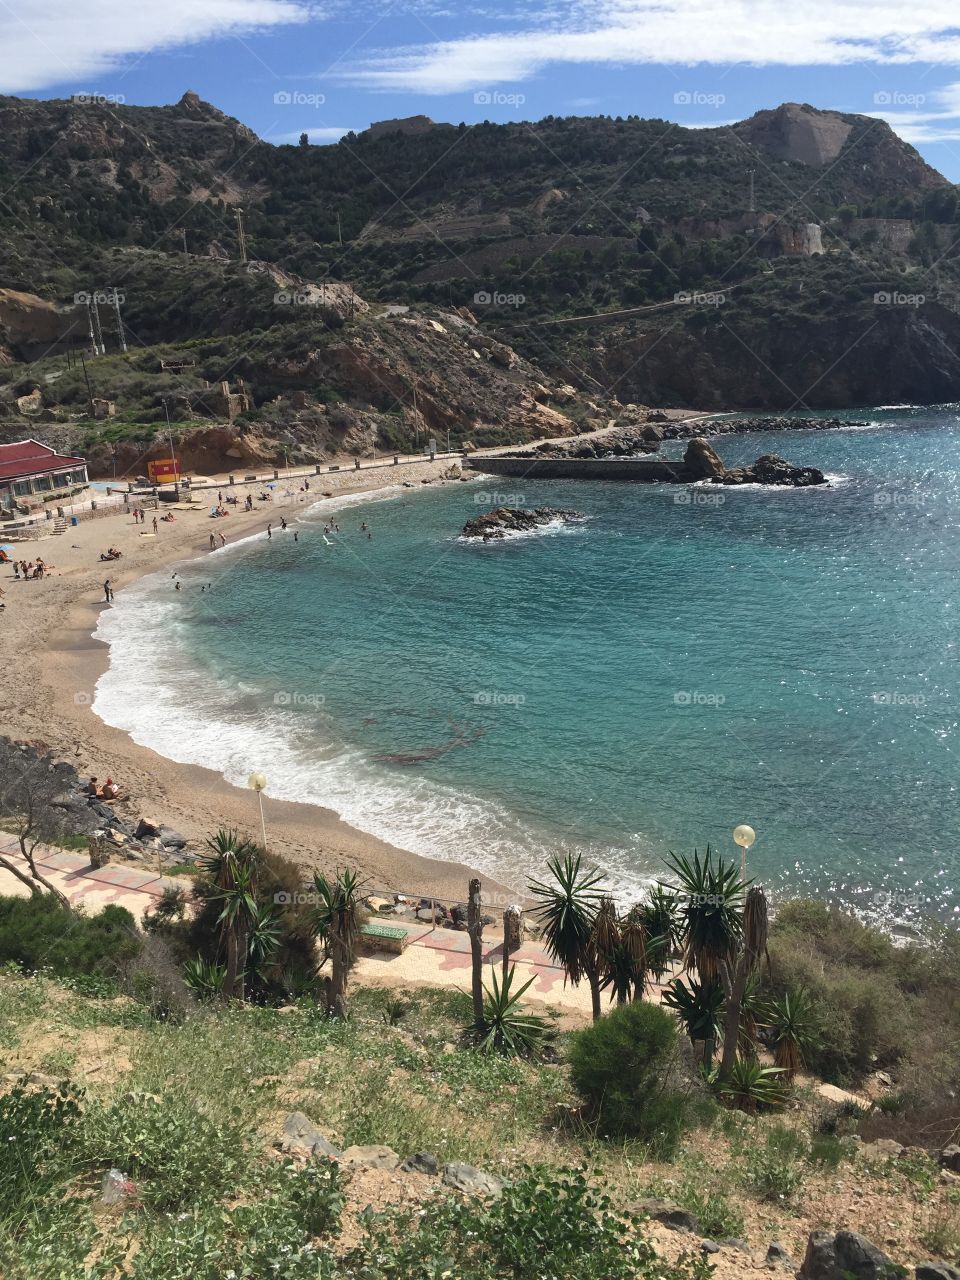 Spanish beach. A beach in Spain